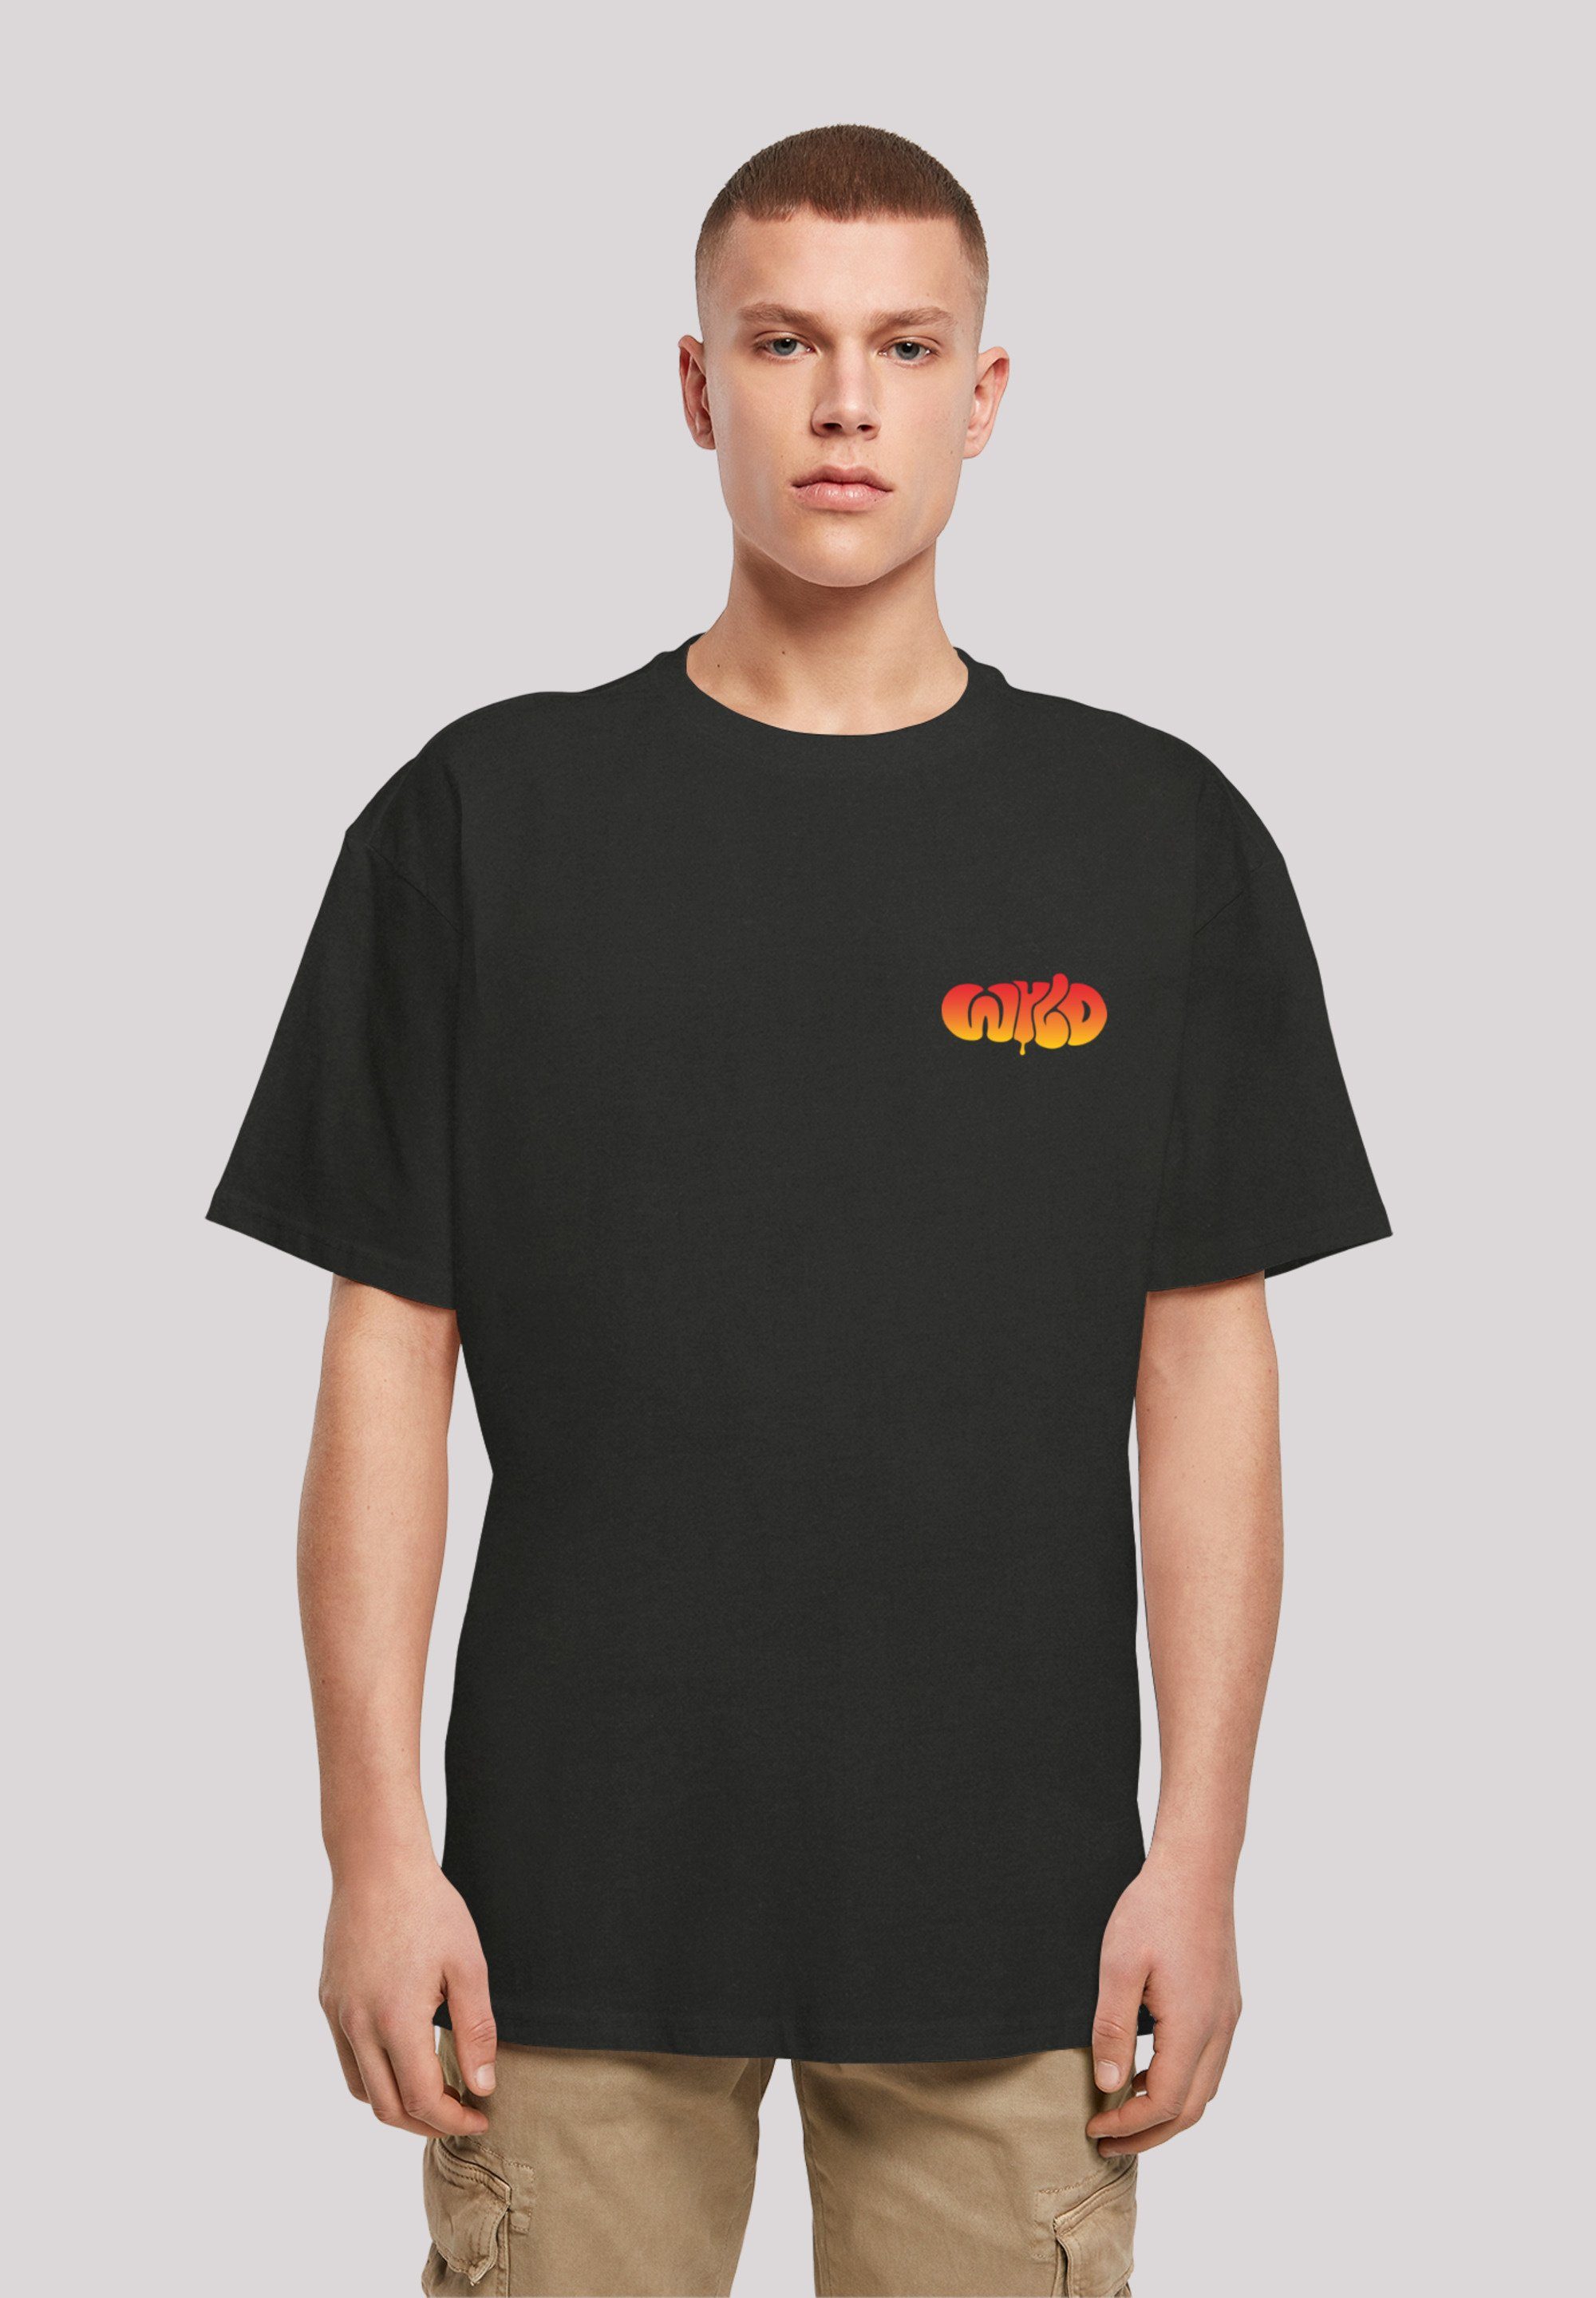 F4NT4STIC T-Shirt WYLD WILD Jugenwort Print schwarz